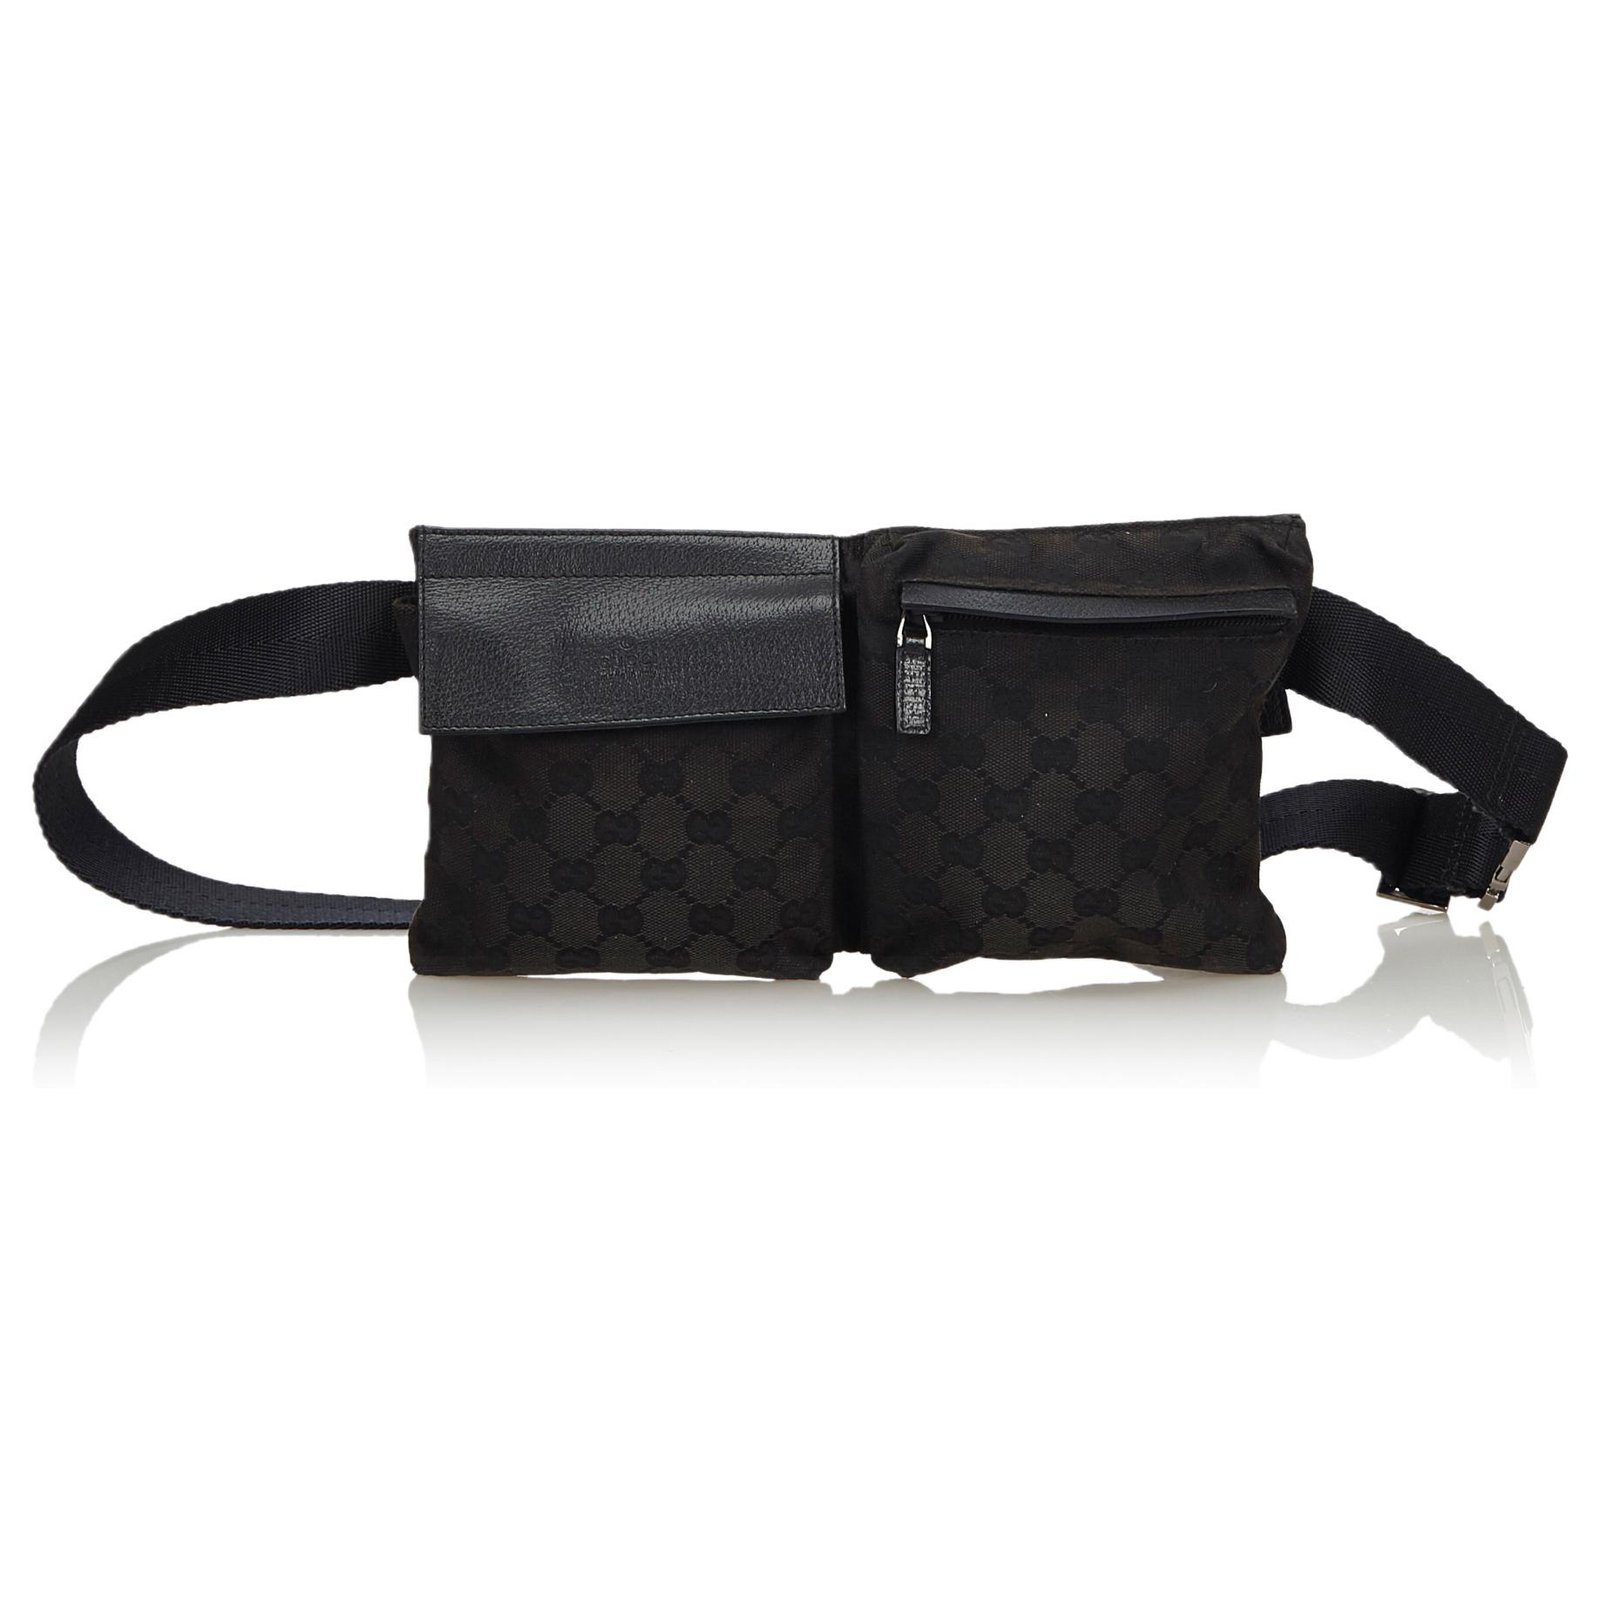 Gucci - Men's GG Large Belt Bag - Black - Canvas